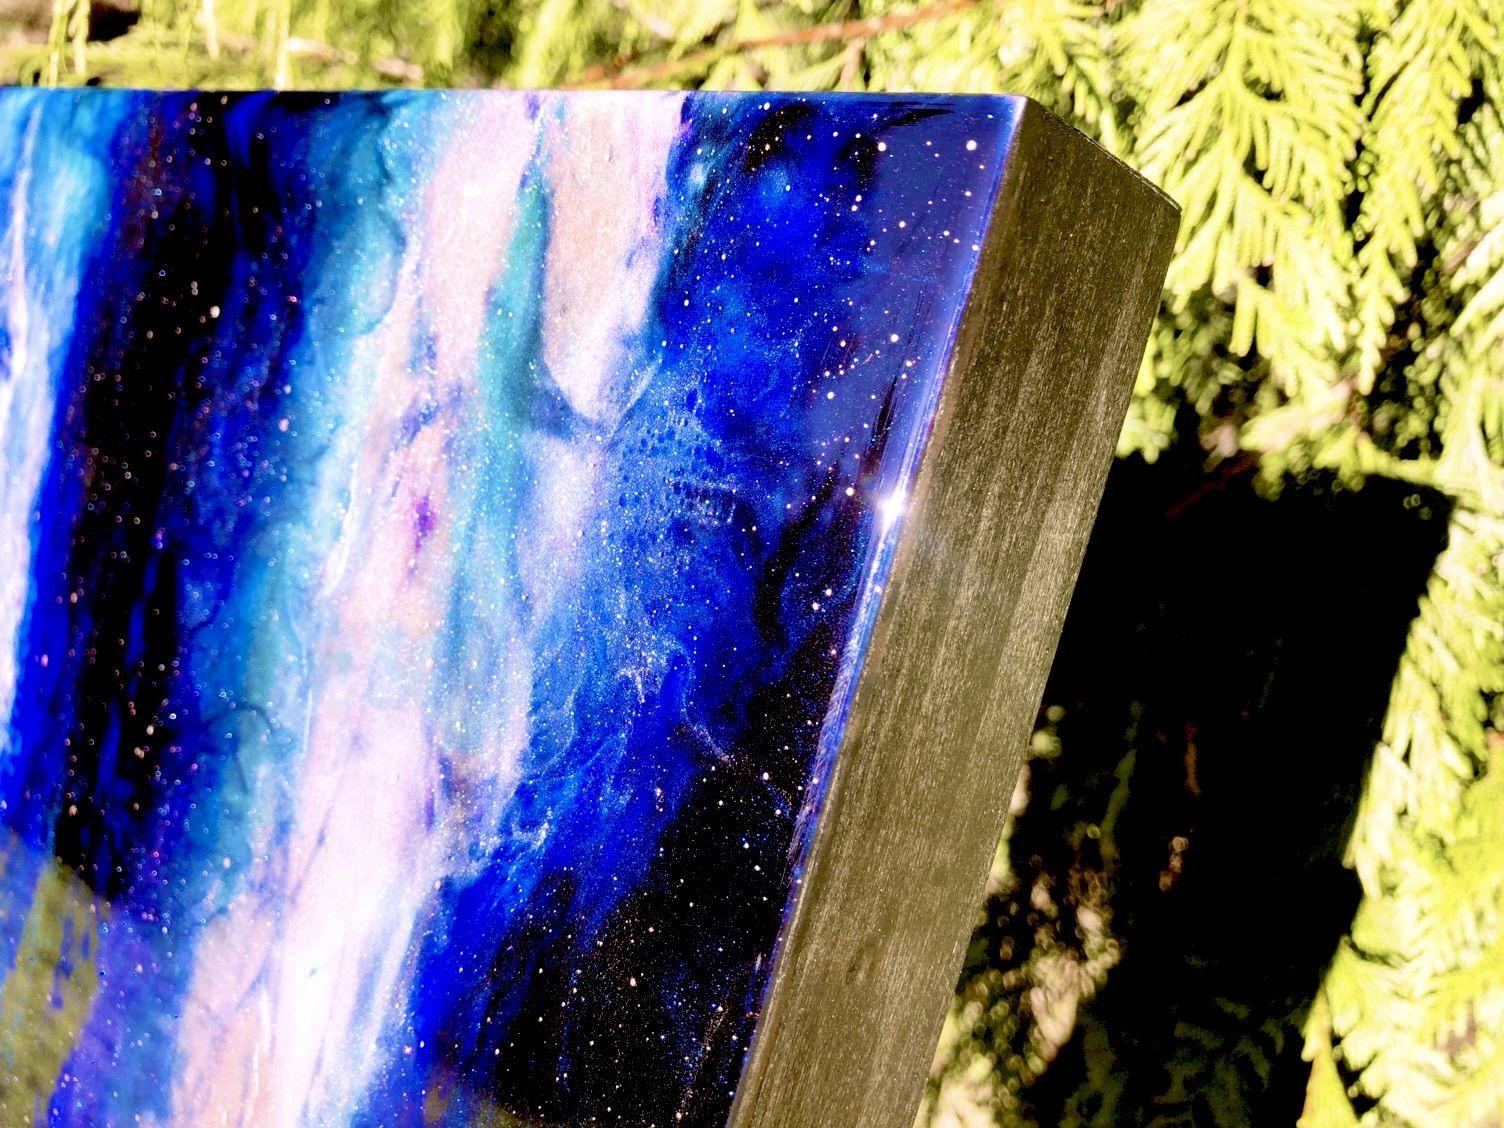 AZAE THETA NEBULA a été réalisée en utilisant la technique de peinture holographique sur résine, signature de Tiffani, pour capturer l'exaltation vibrante de la découverte cosmologique. Le riche bleu saphir s'estompe dans le noir de l'espace,